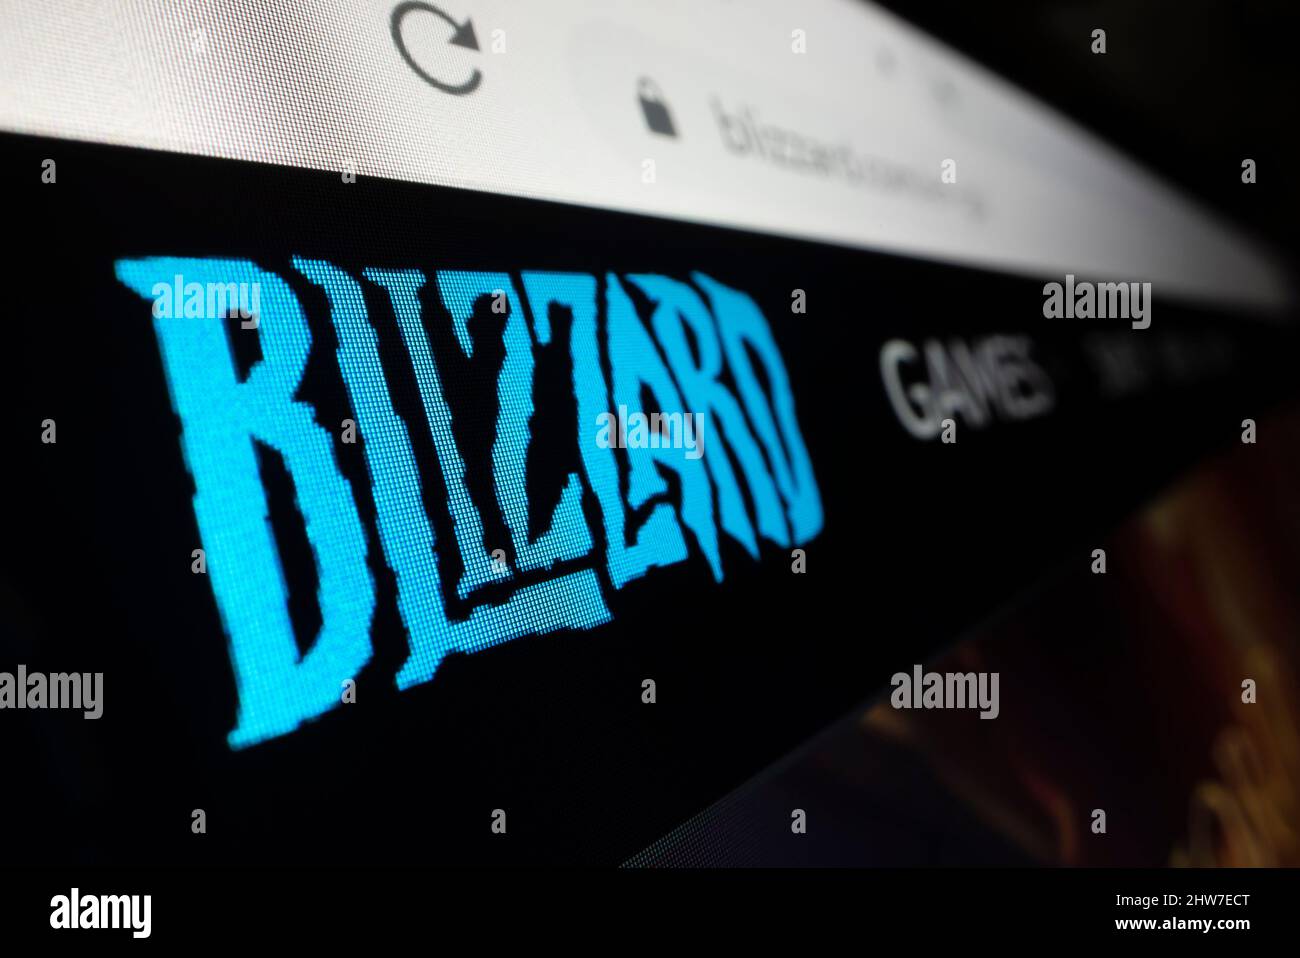 Melbourne, Australien - 4. Februar 2022: Nahaufnahme des Blizzard Entertainment-Logos auf seiner Website, aufgenommen mit Makroobjektiv Stockfoto